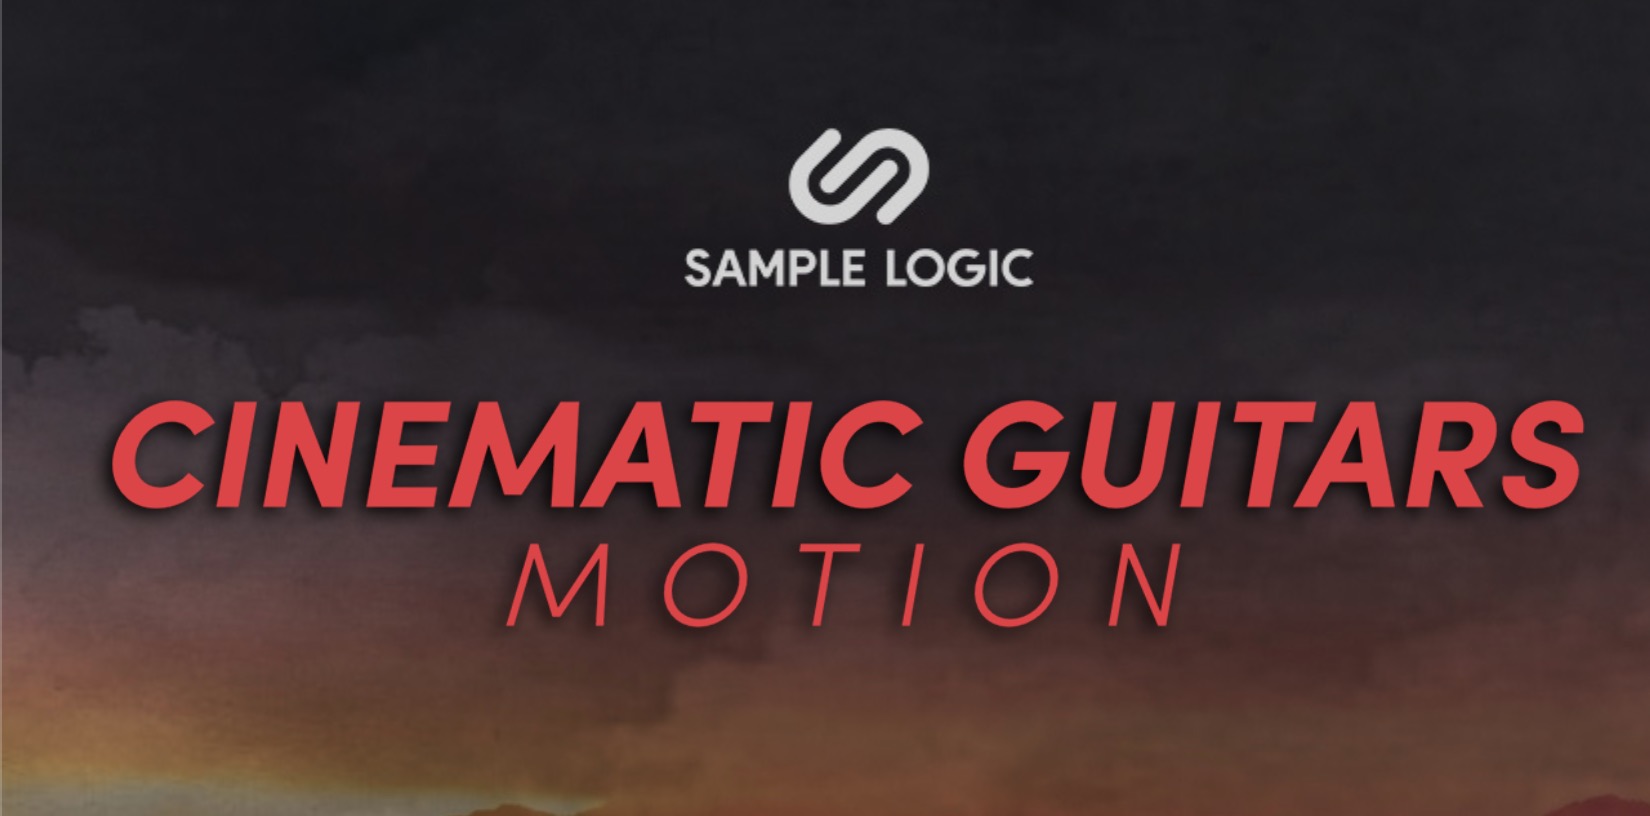 Sample Logic Cinematic Guitars Motion - HD Wallpaper 